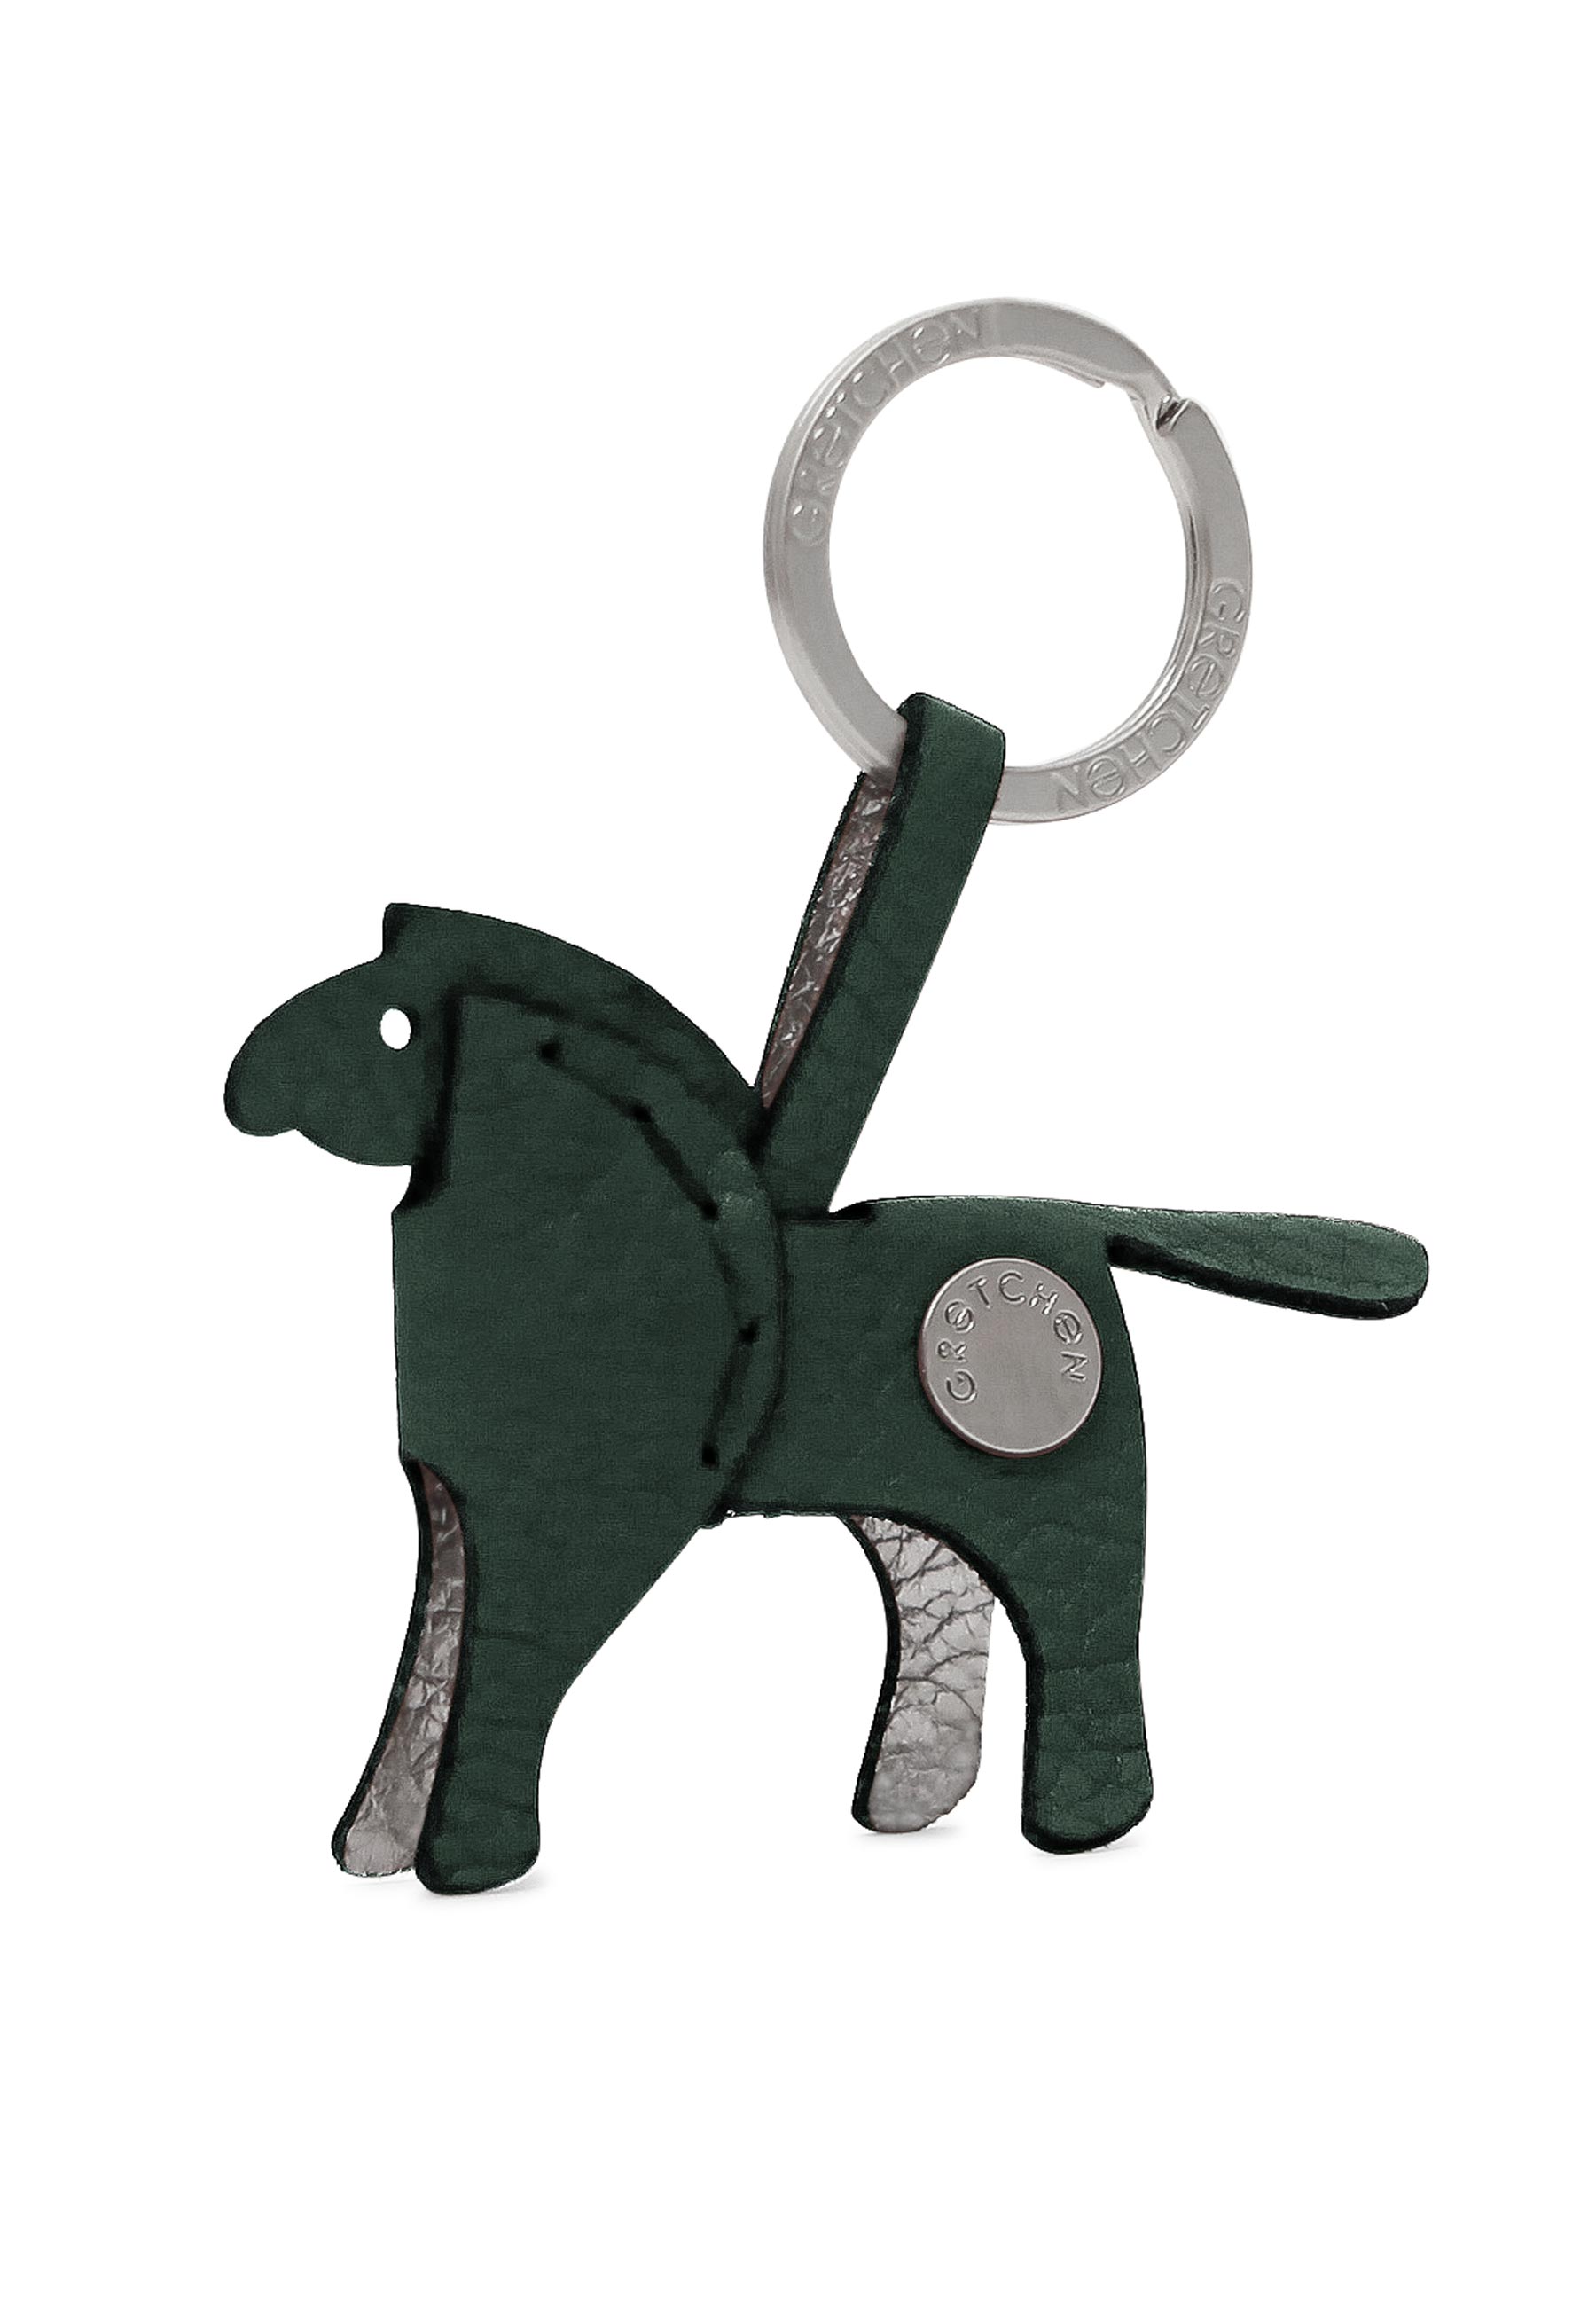 Hochwertiger Schlüsselanhänger in Pony-From von Gretchen | mygretchen.com